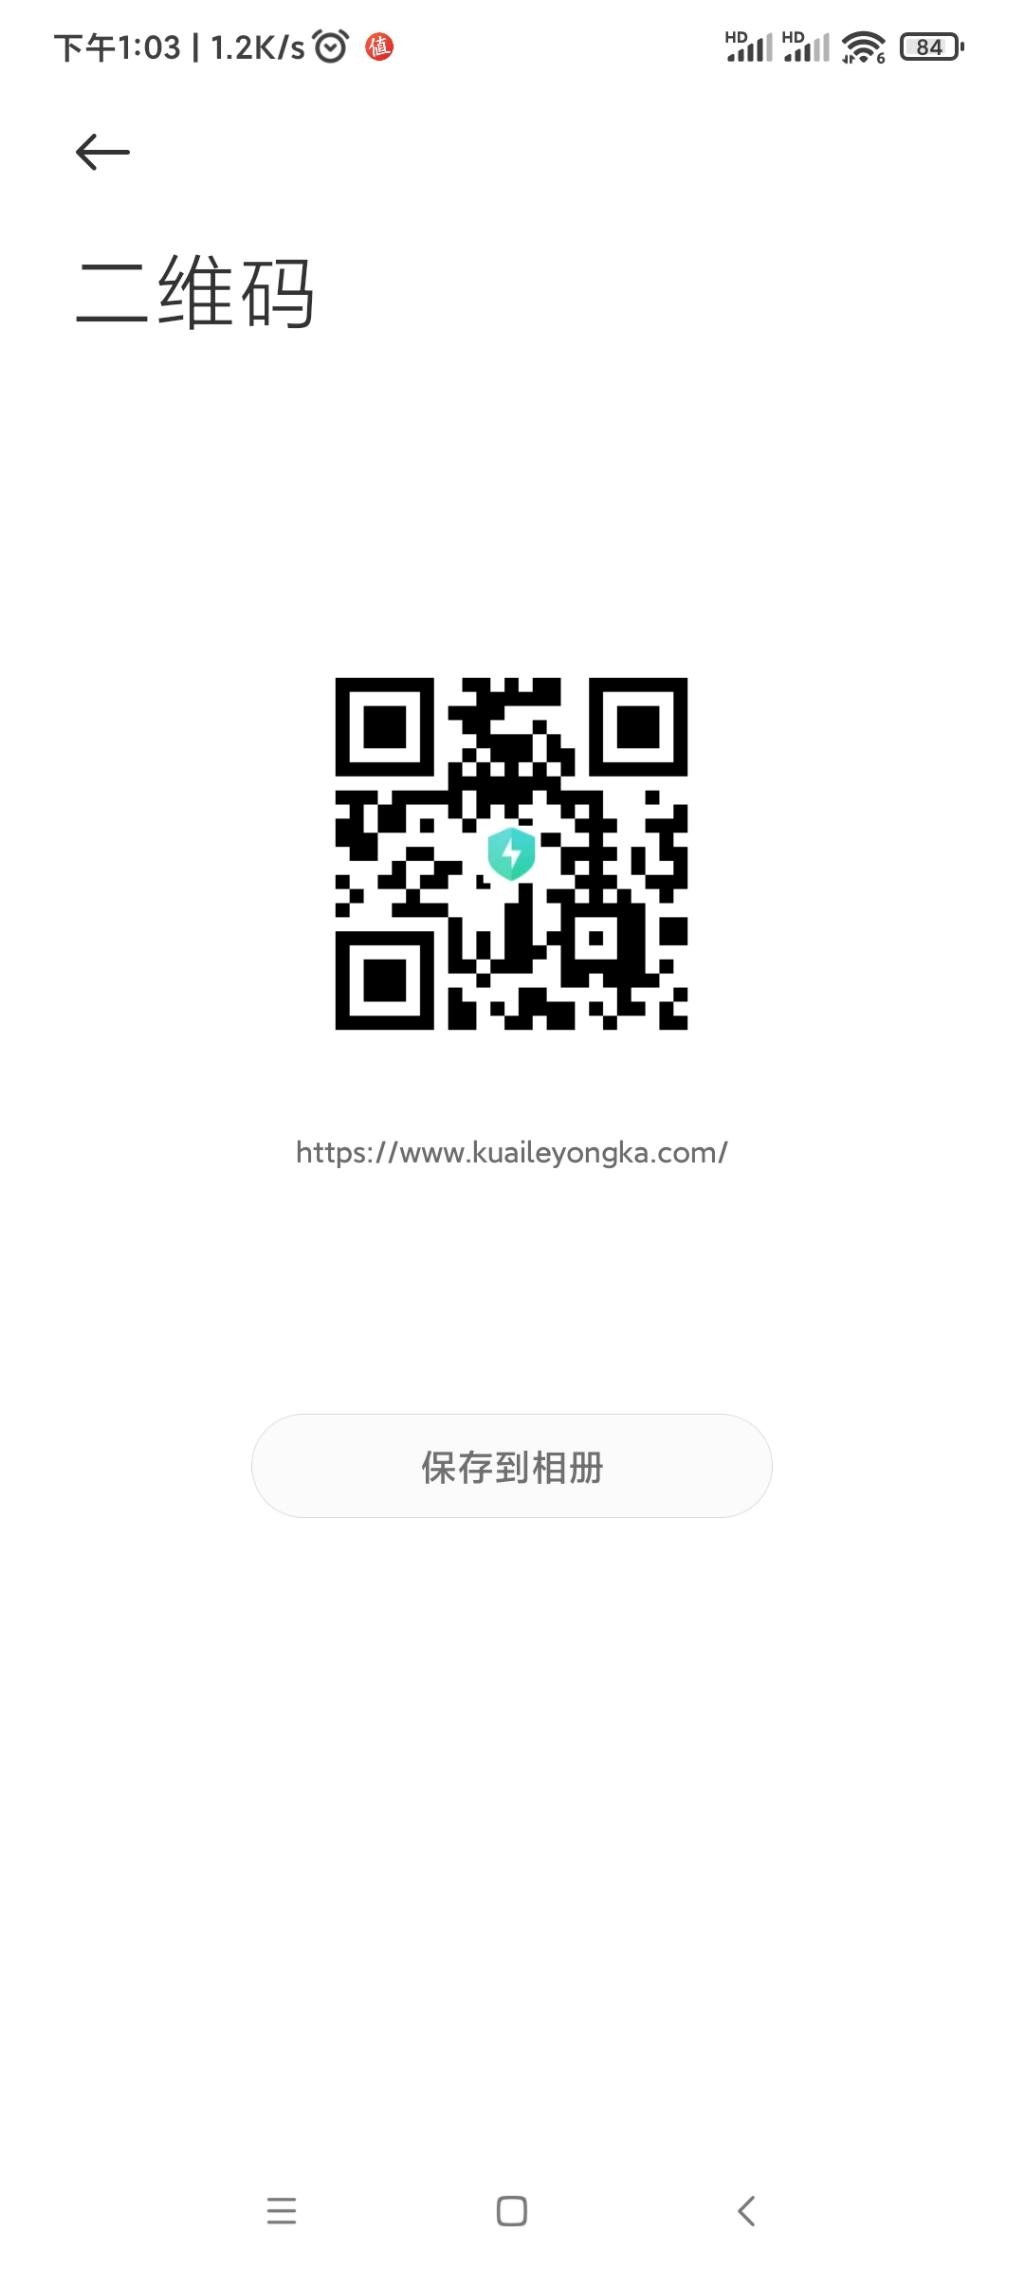 快乐用卡-礼享三重奏  ysf  新活动-惠小助(52huixz.com)